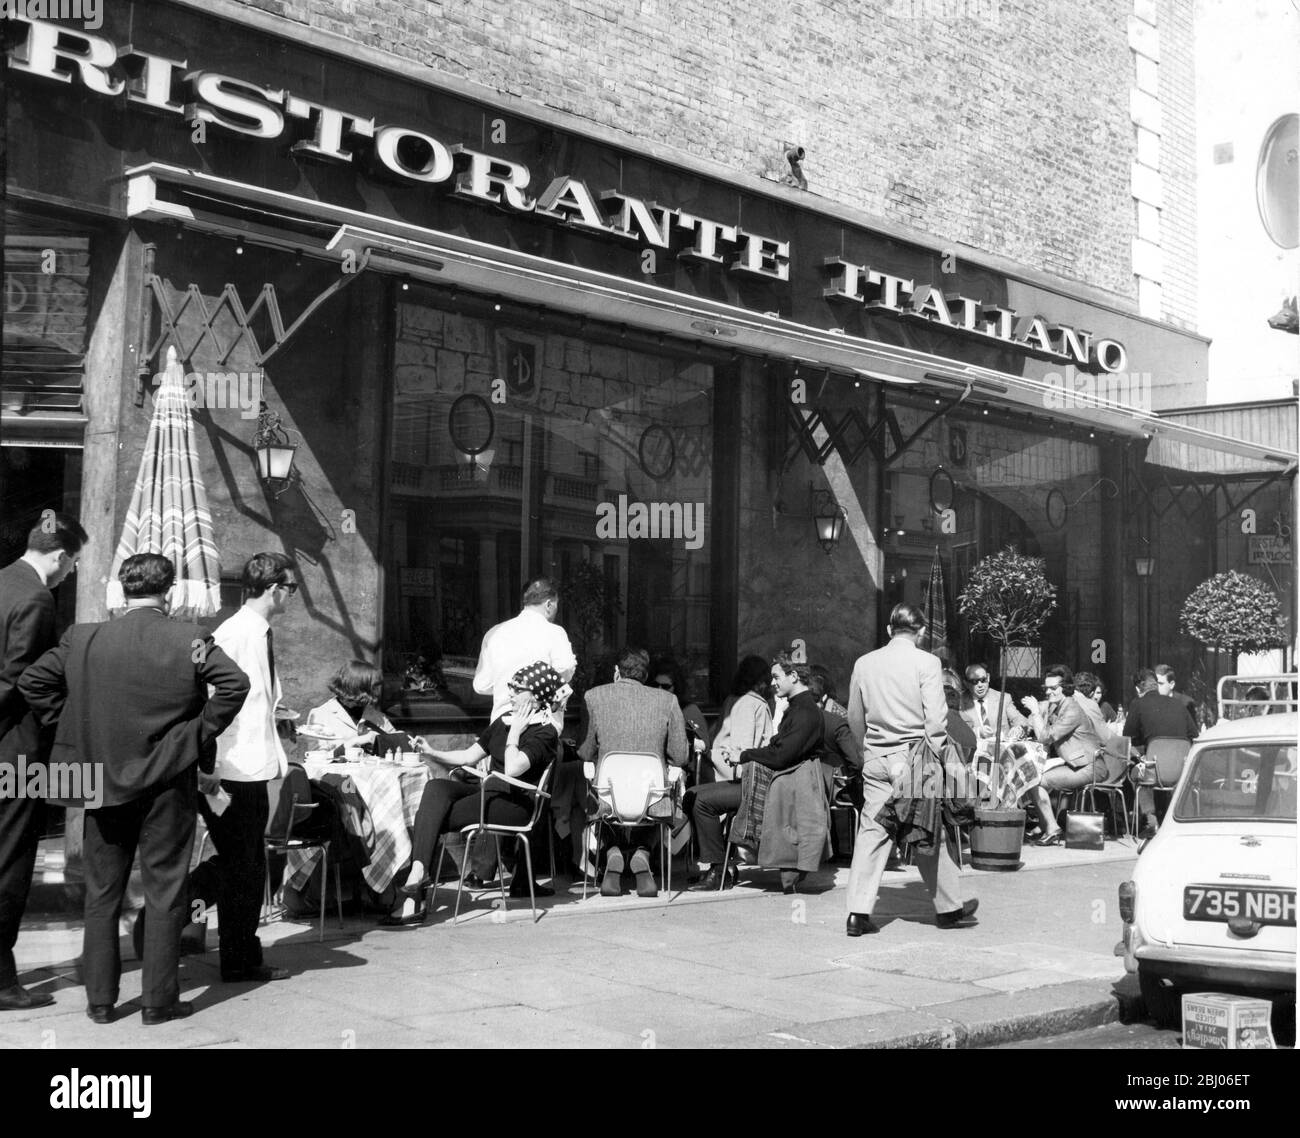 Il bar sul marciapiede a Londra - il sole è venuto a Londra questo pomeriggio - e alcuni sono persino andati a mangiare fuori - come in questo ristorante Kensington. - 11/4/64 - Foto Stock